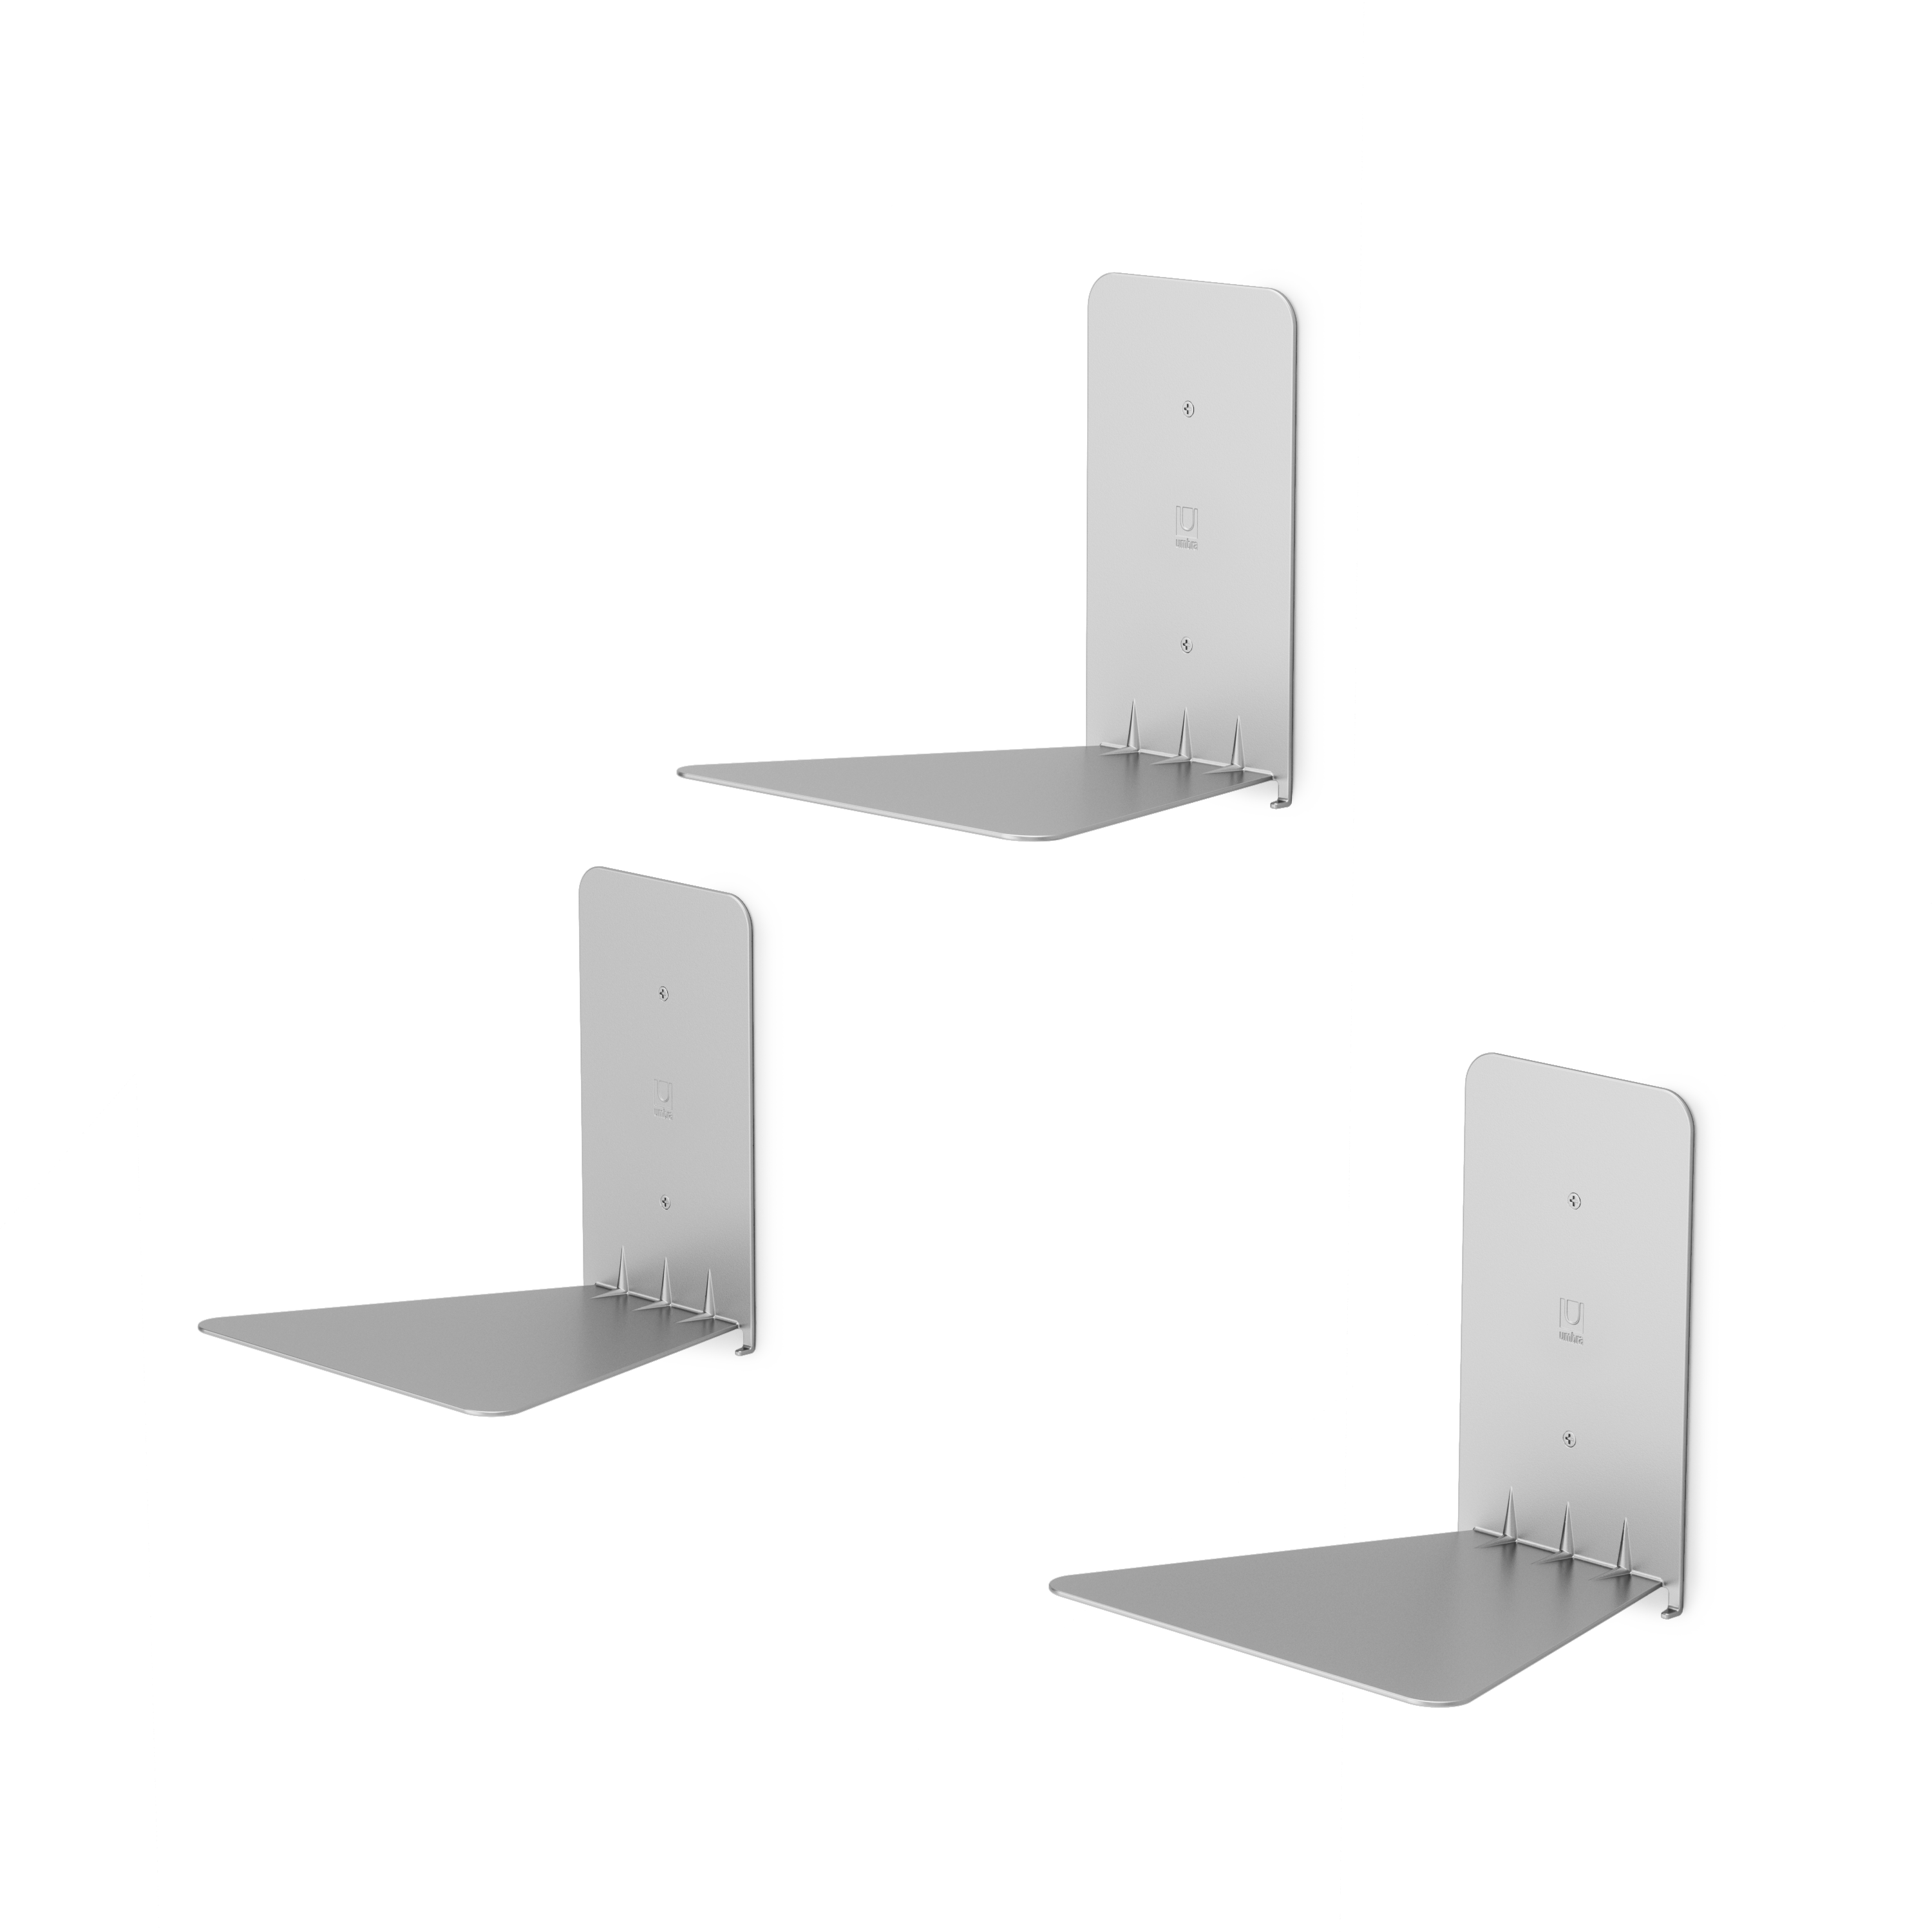 Conceal Floating Shelves (Set of 3)